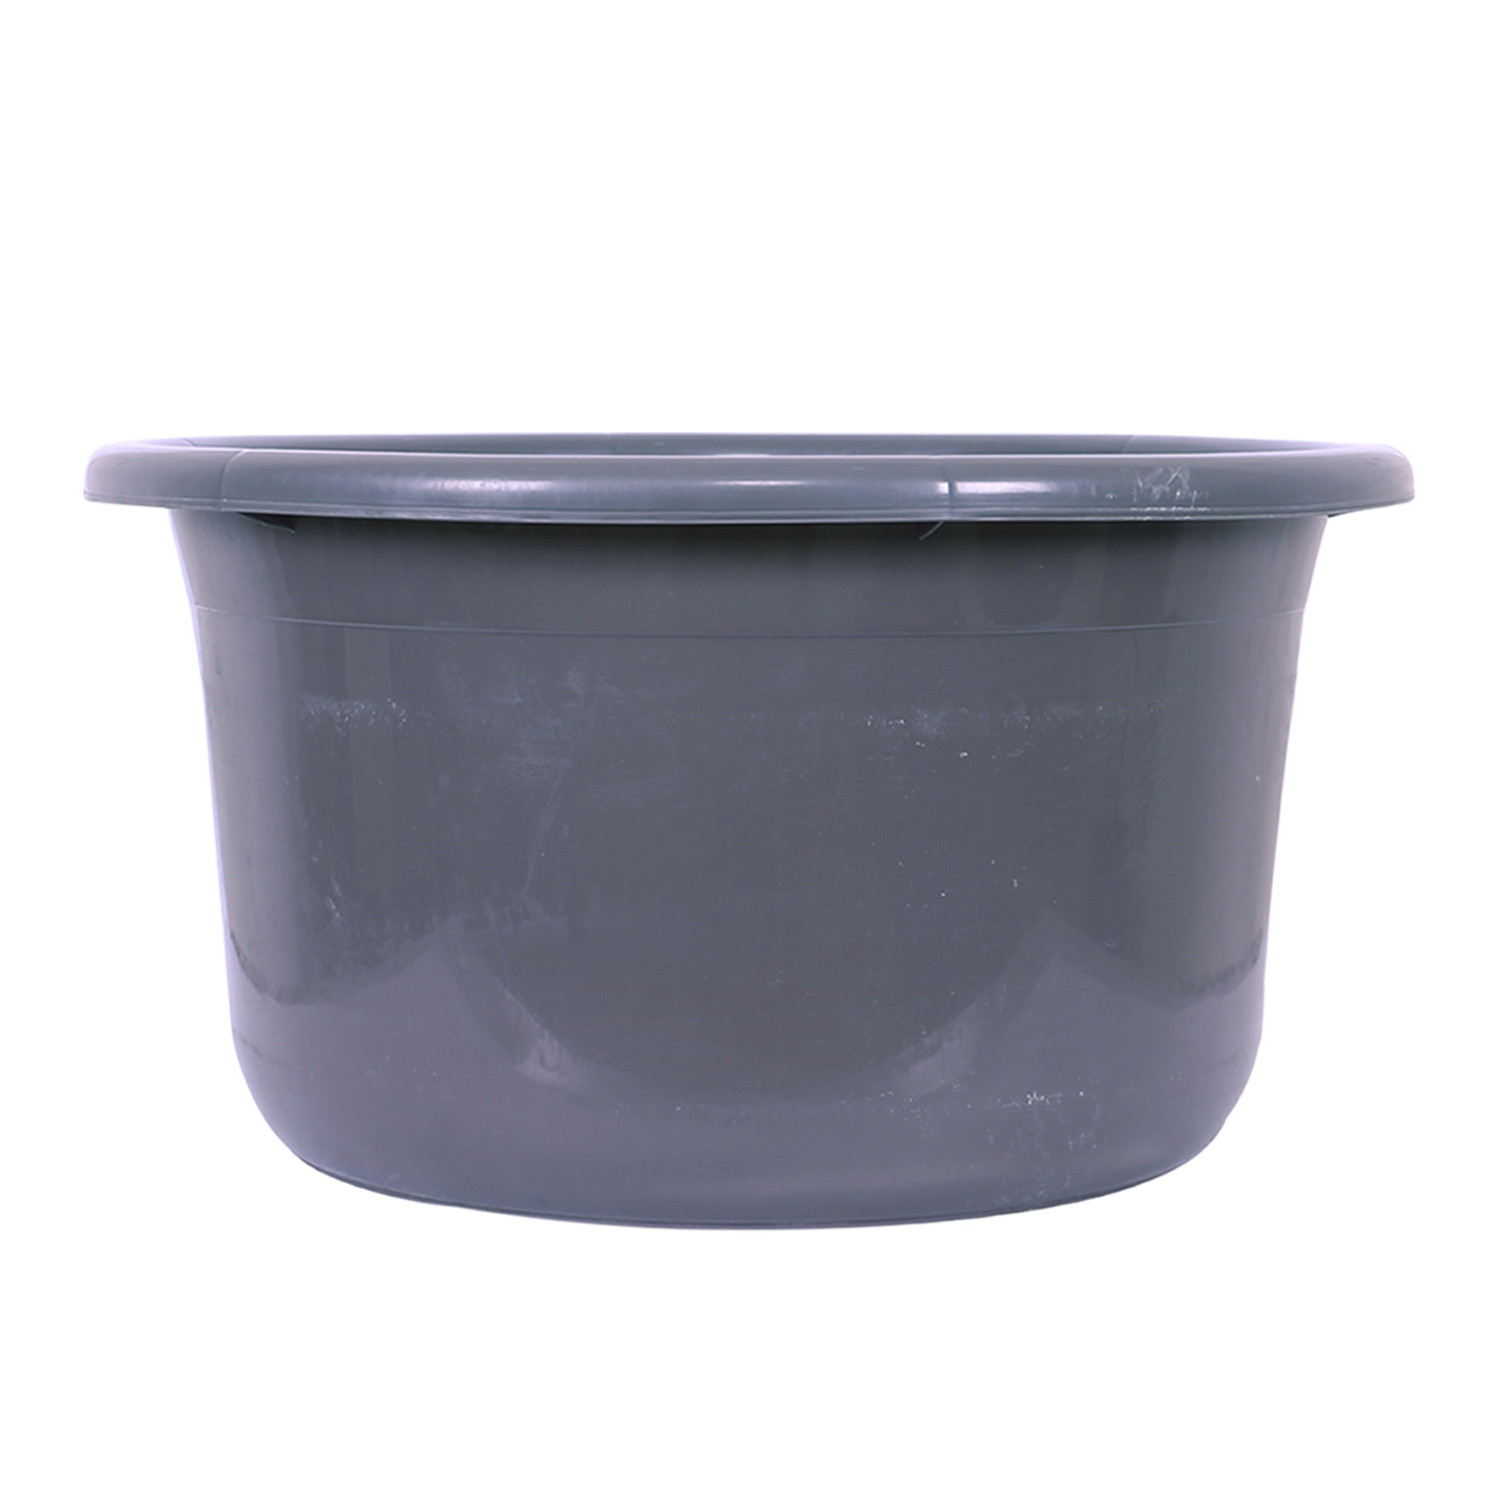 Kuber Industries Bath Tub | Versatile Utility Gaint Tub | Plastic Bath Tub for Baby | Baby Bathing Tub | Clothes Washing Tub For Bathroom | Feeding Pan Tub | TUB-25 LTR | Gray